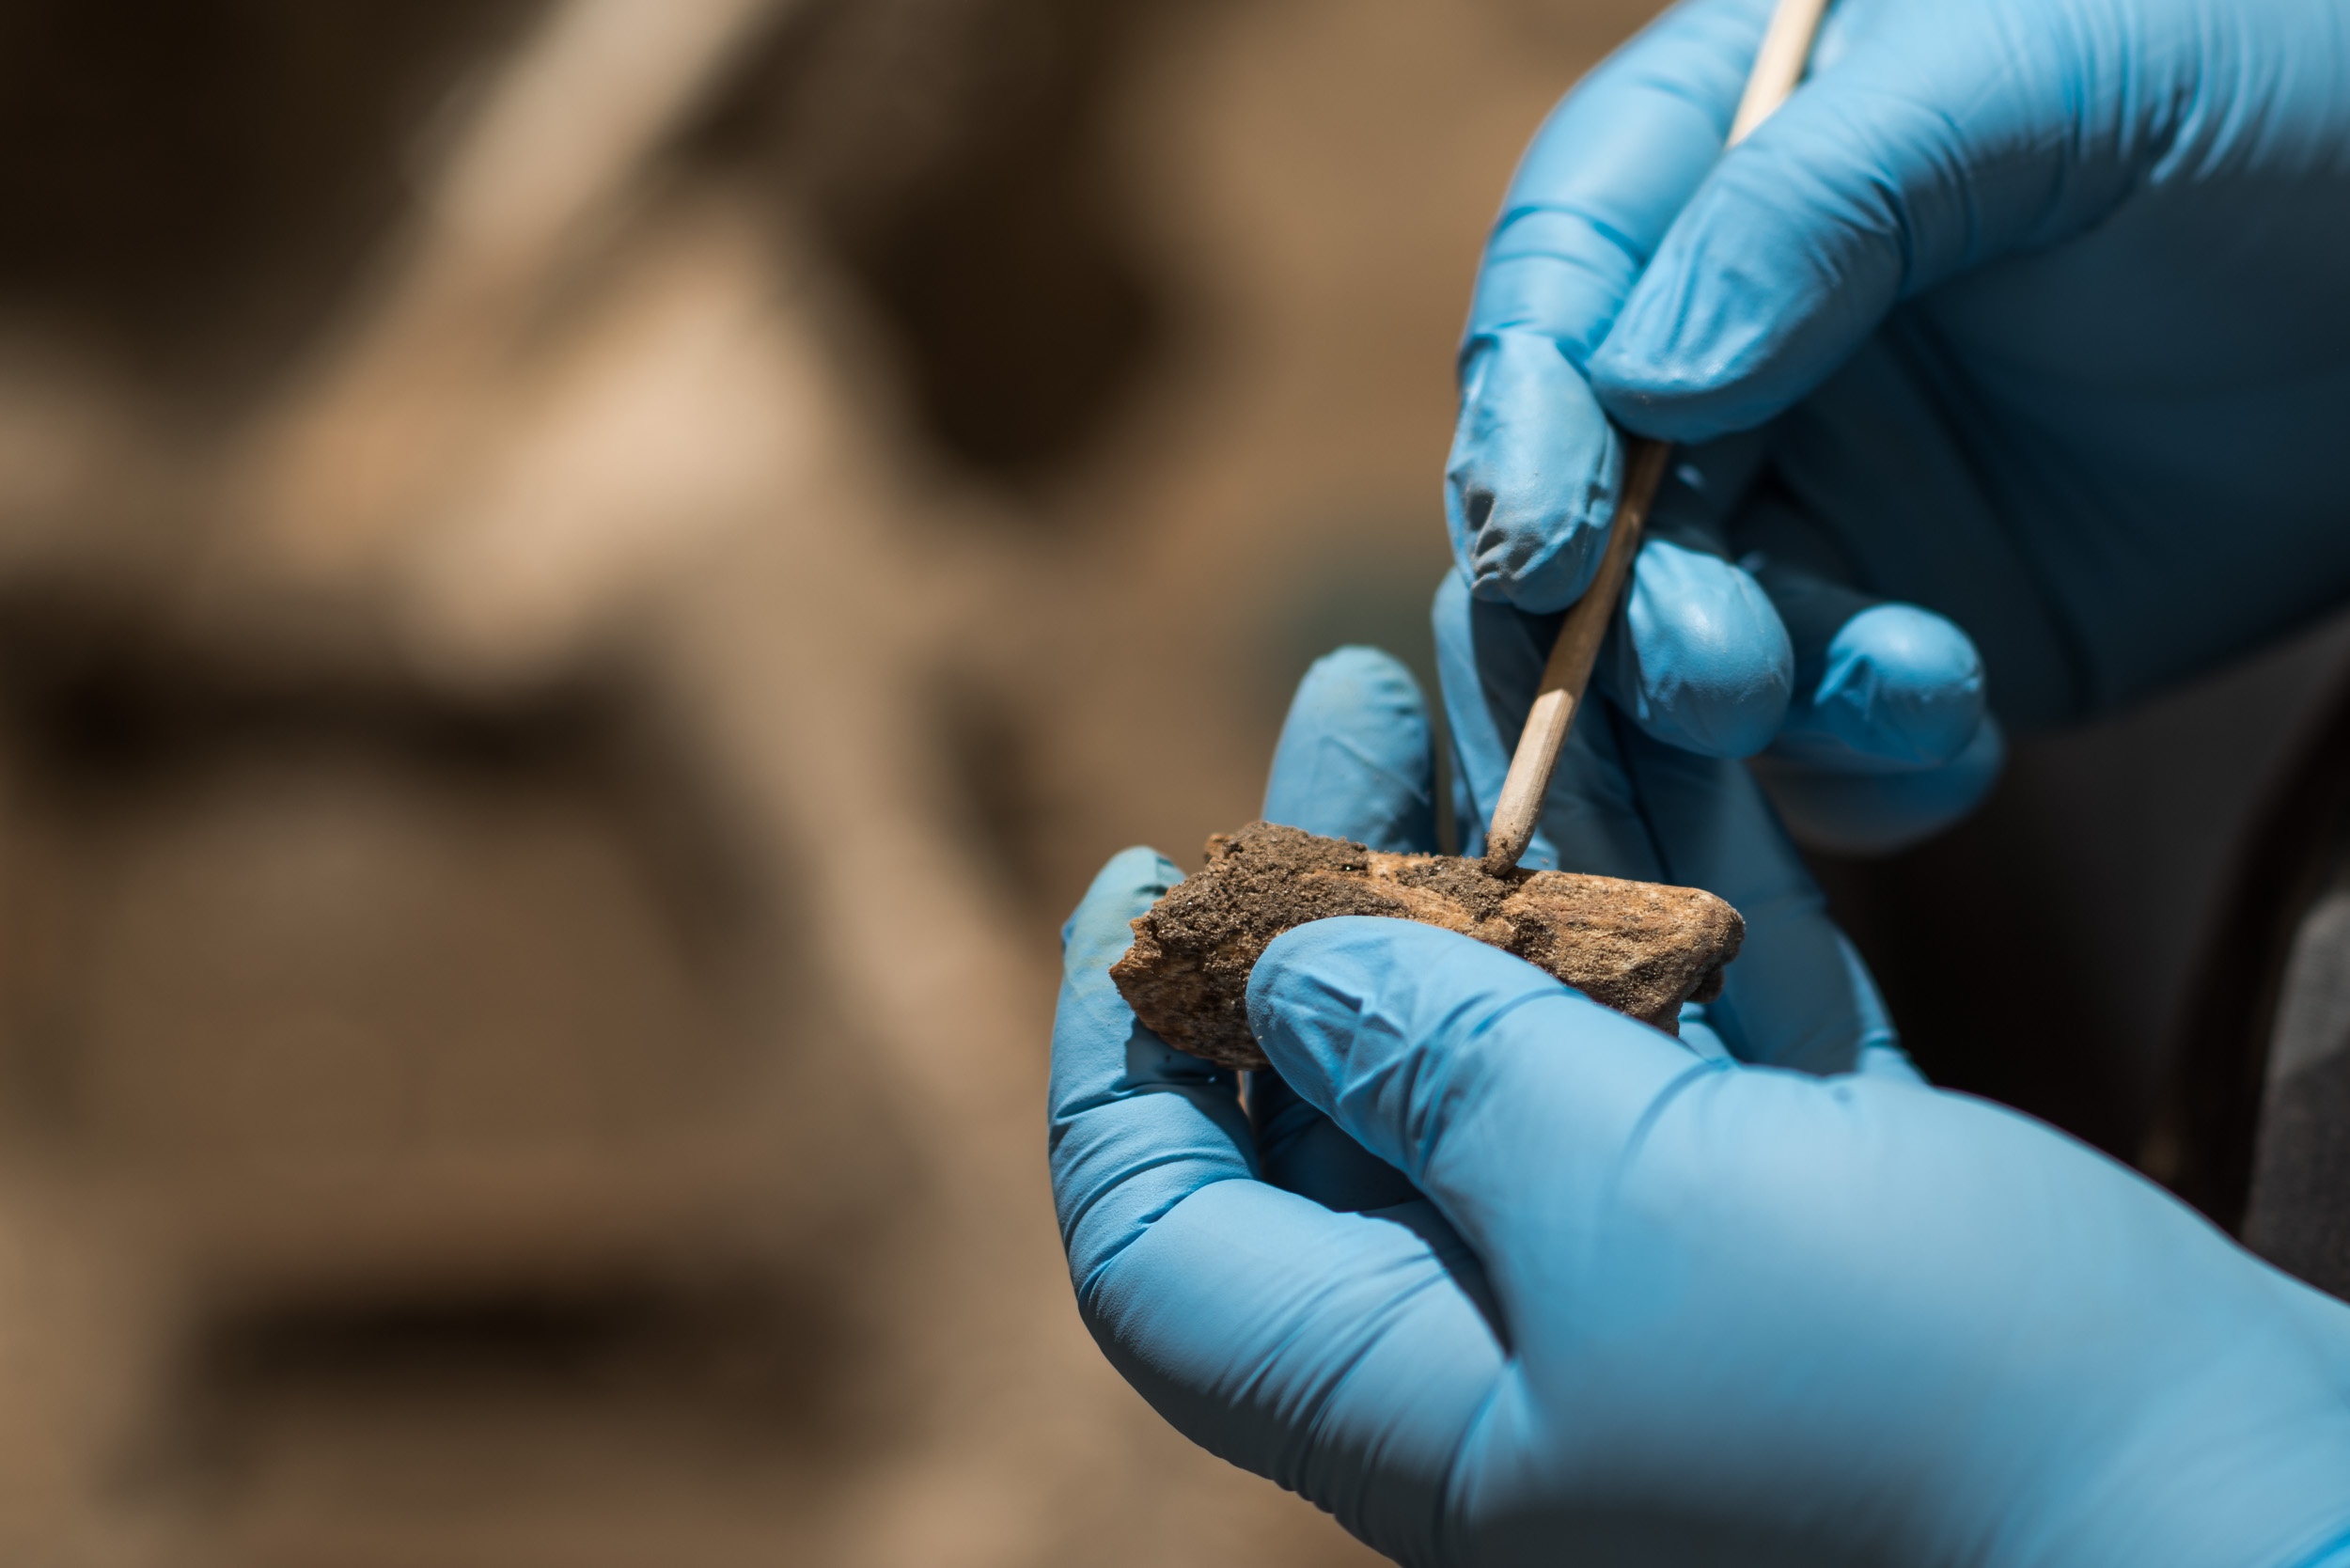 Instituto de Pesquisa e Memória Pretos Novos celebra anos da descoberta do Sítio Arqueológico